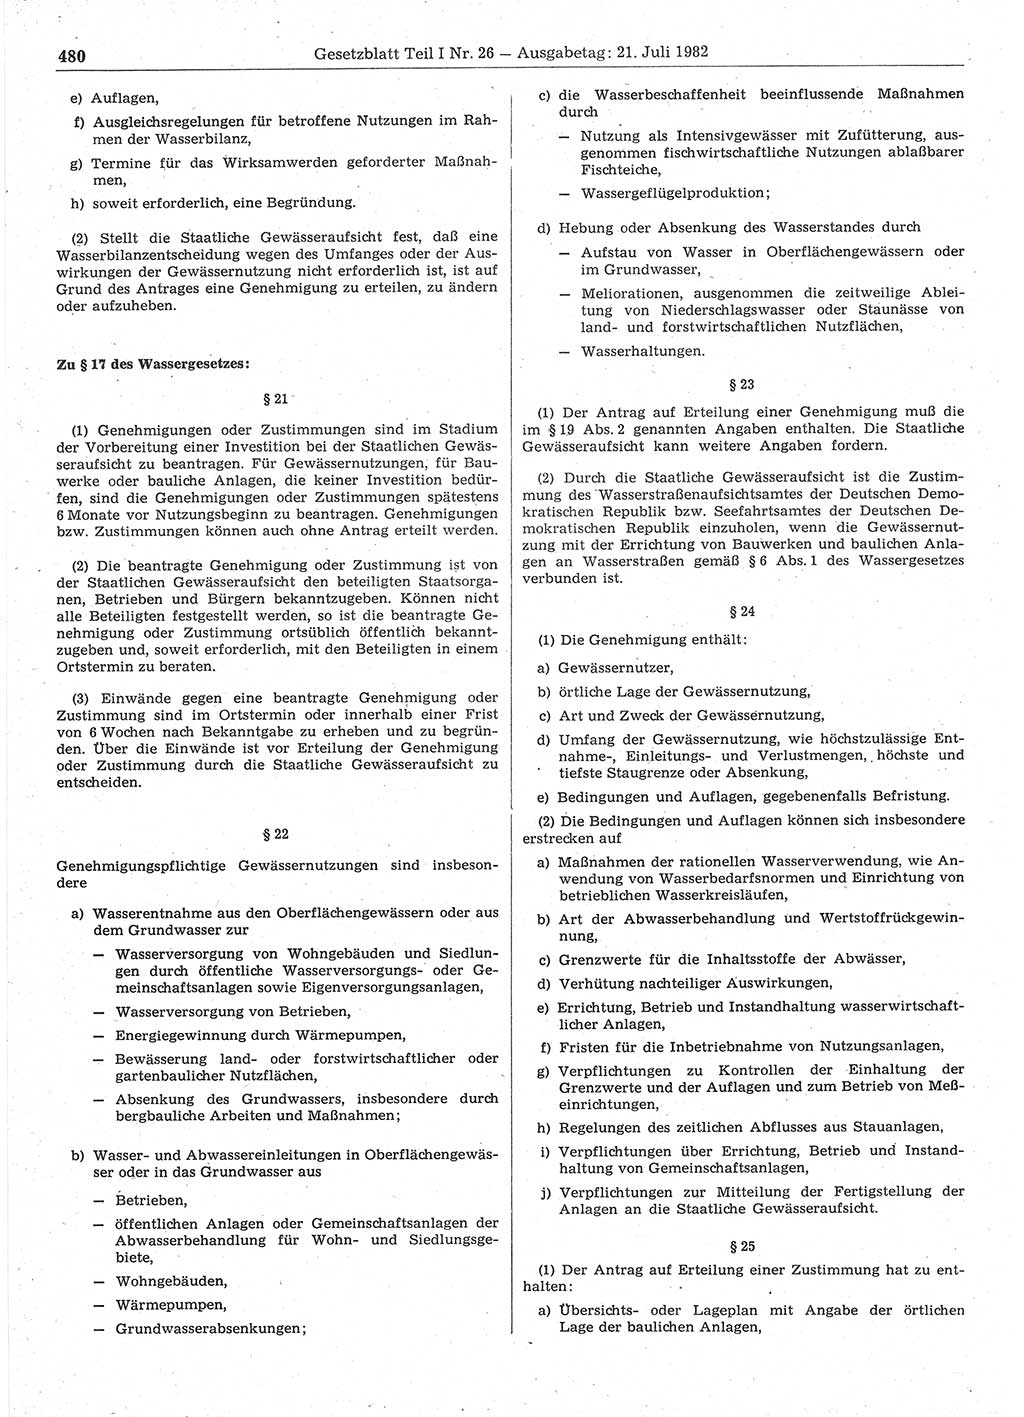 Gesetzblatt (GBl.) der Deutschen Demokratischen Republik (DDR) Teil Ⅰ 1982, Seite 480 (GBl. DDR Ⅰ 1982, S. 480)